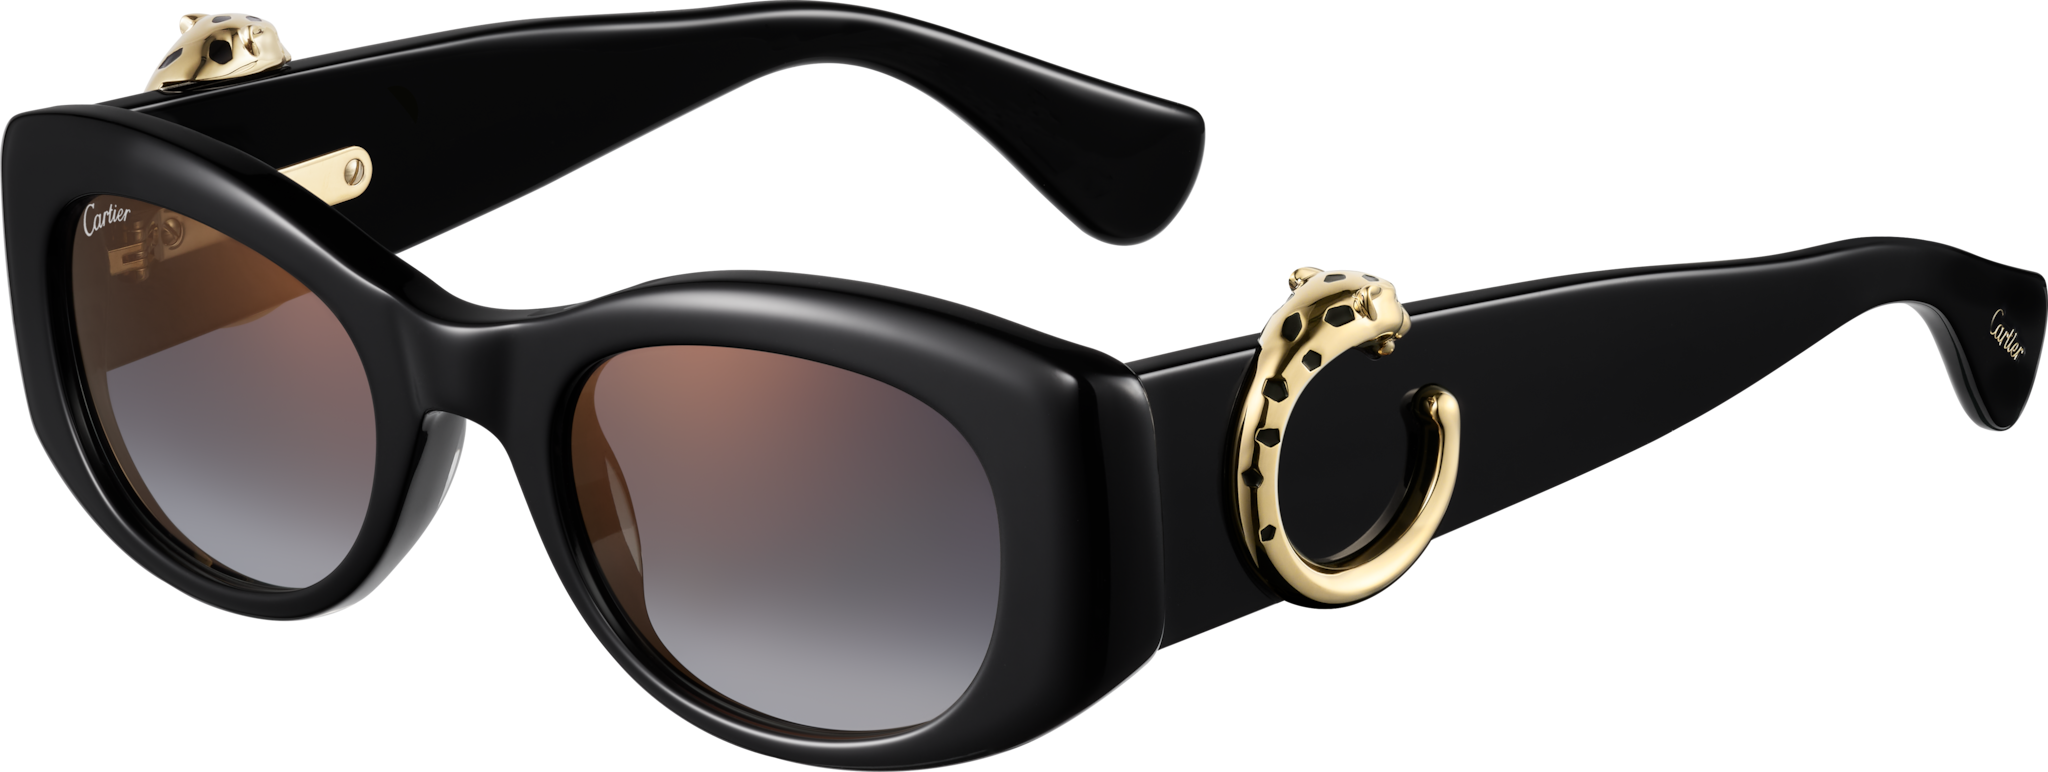 Panthère de Cartier SunglassesBlack composite, grey lenses